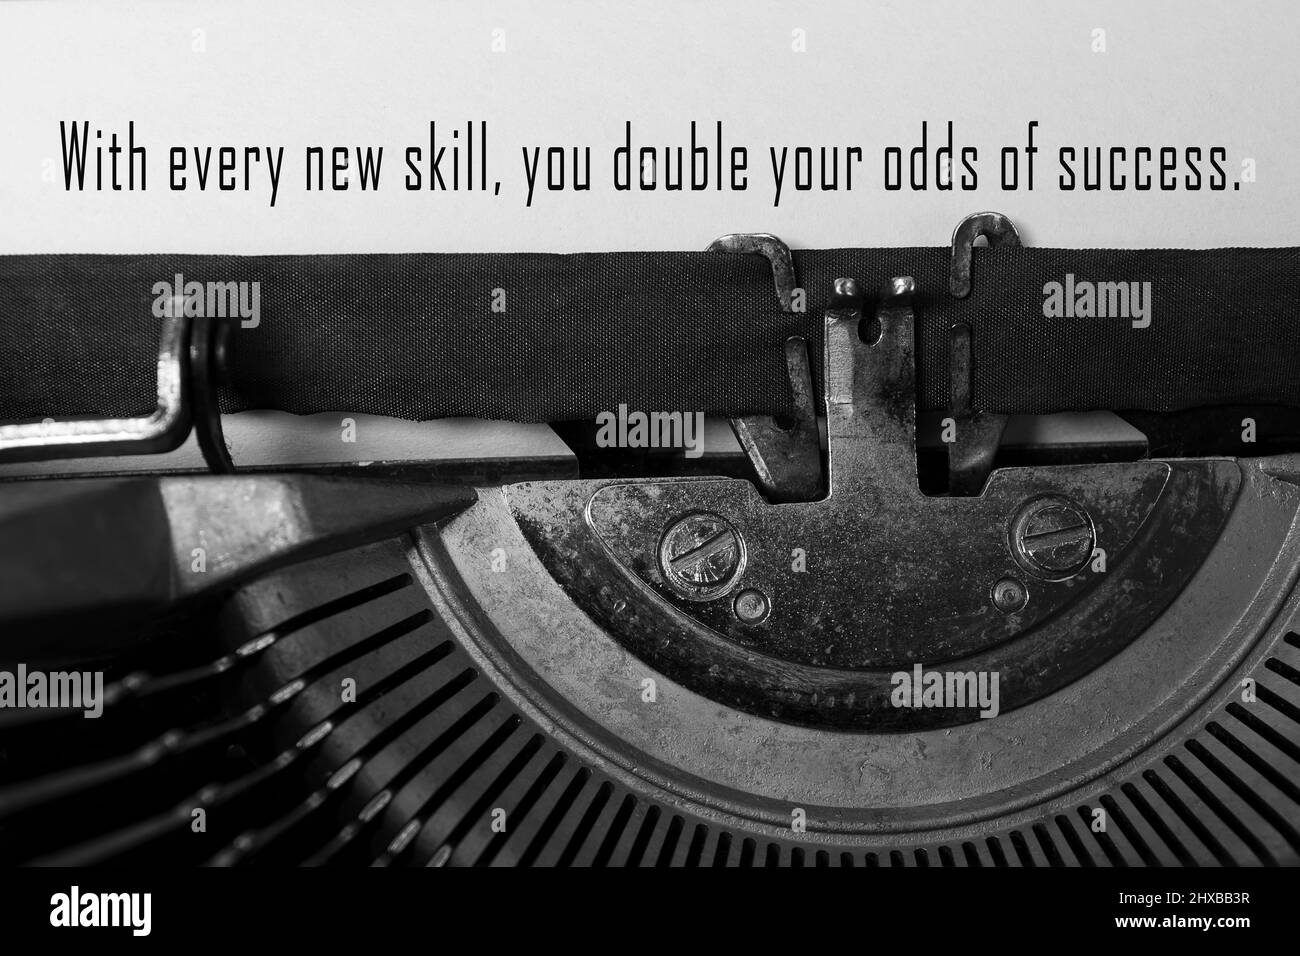 Motivierendes Zitat auf einer alten Schreibmaschine – mit jeder neuen Fähigkeit verdoppeln Sie Ihre Erfolgsaussichten. Stockfoto